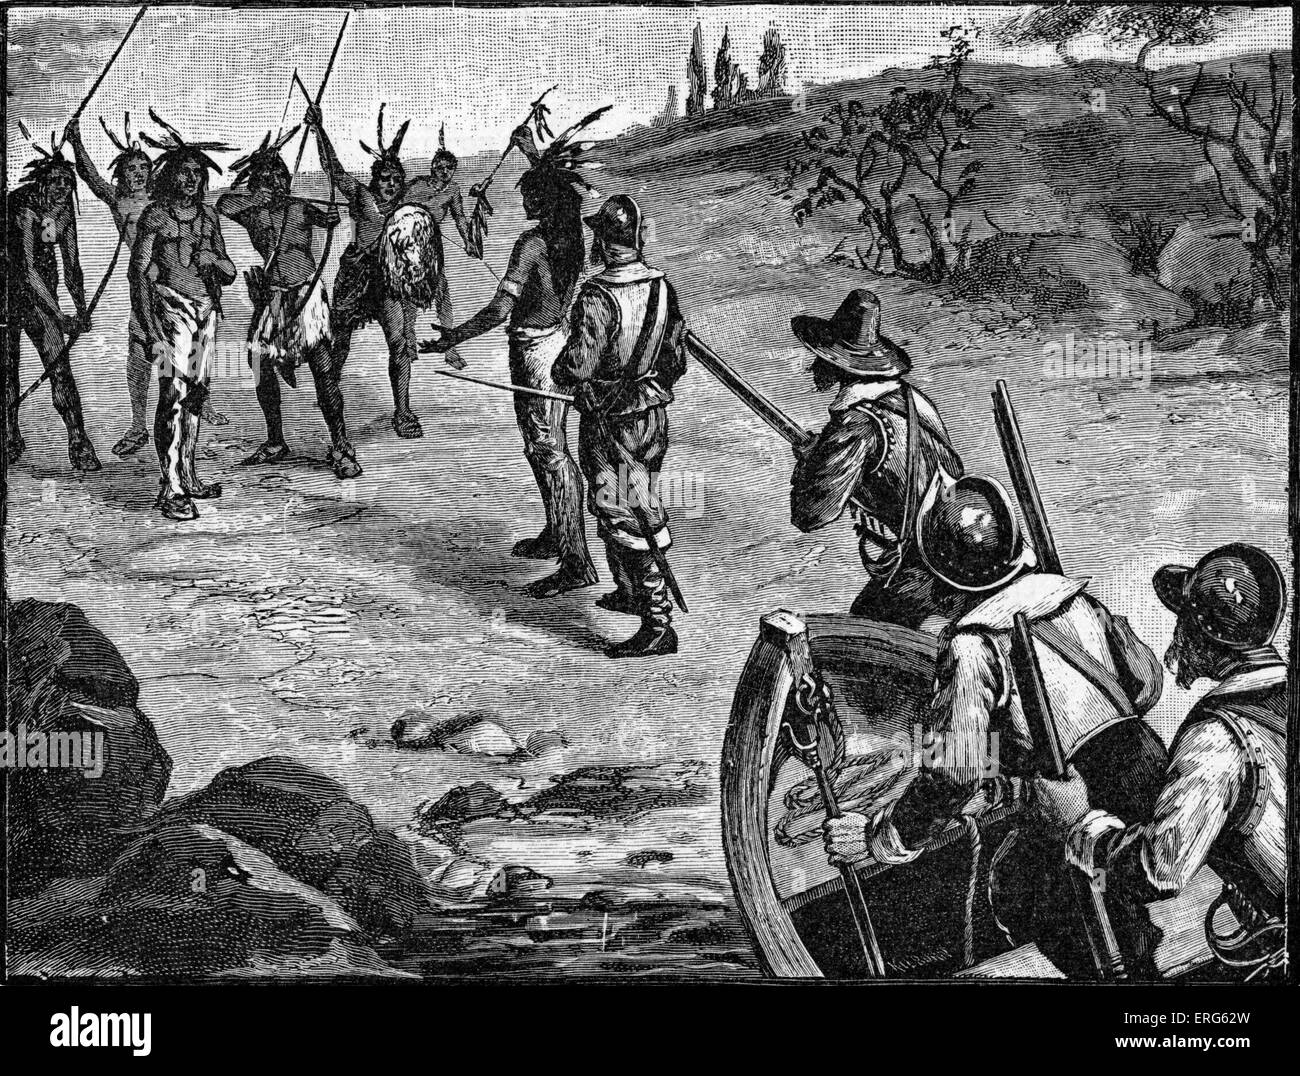 Les colons anglais puritain dans les Amériques, confrontée à une tribu amérindienne, comme illustré à Elbridge Streeter Brooks' Banque D'Images